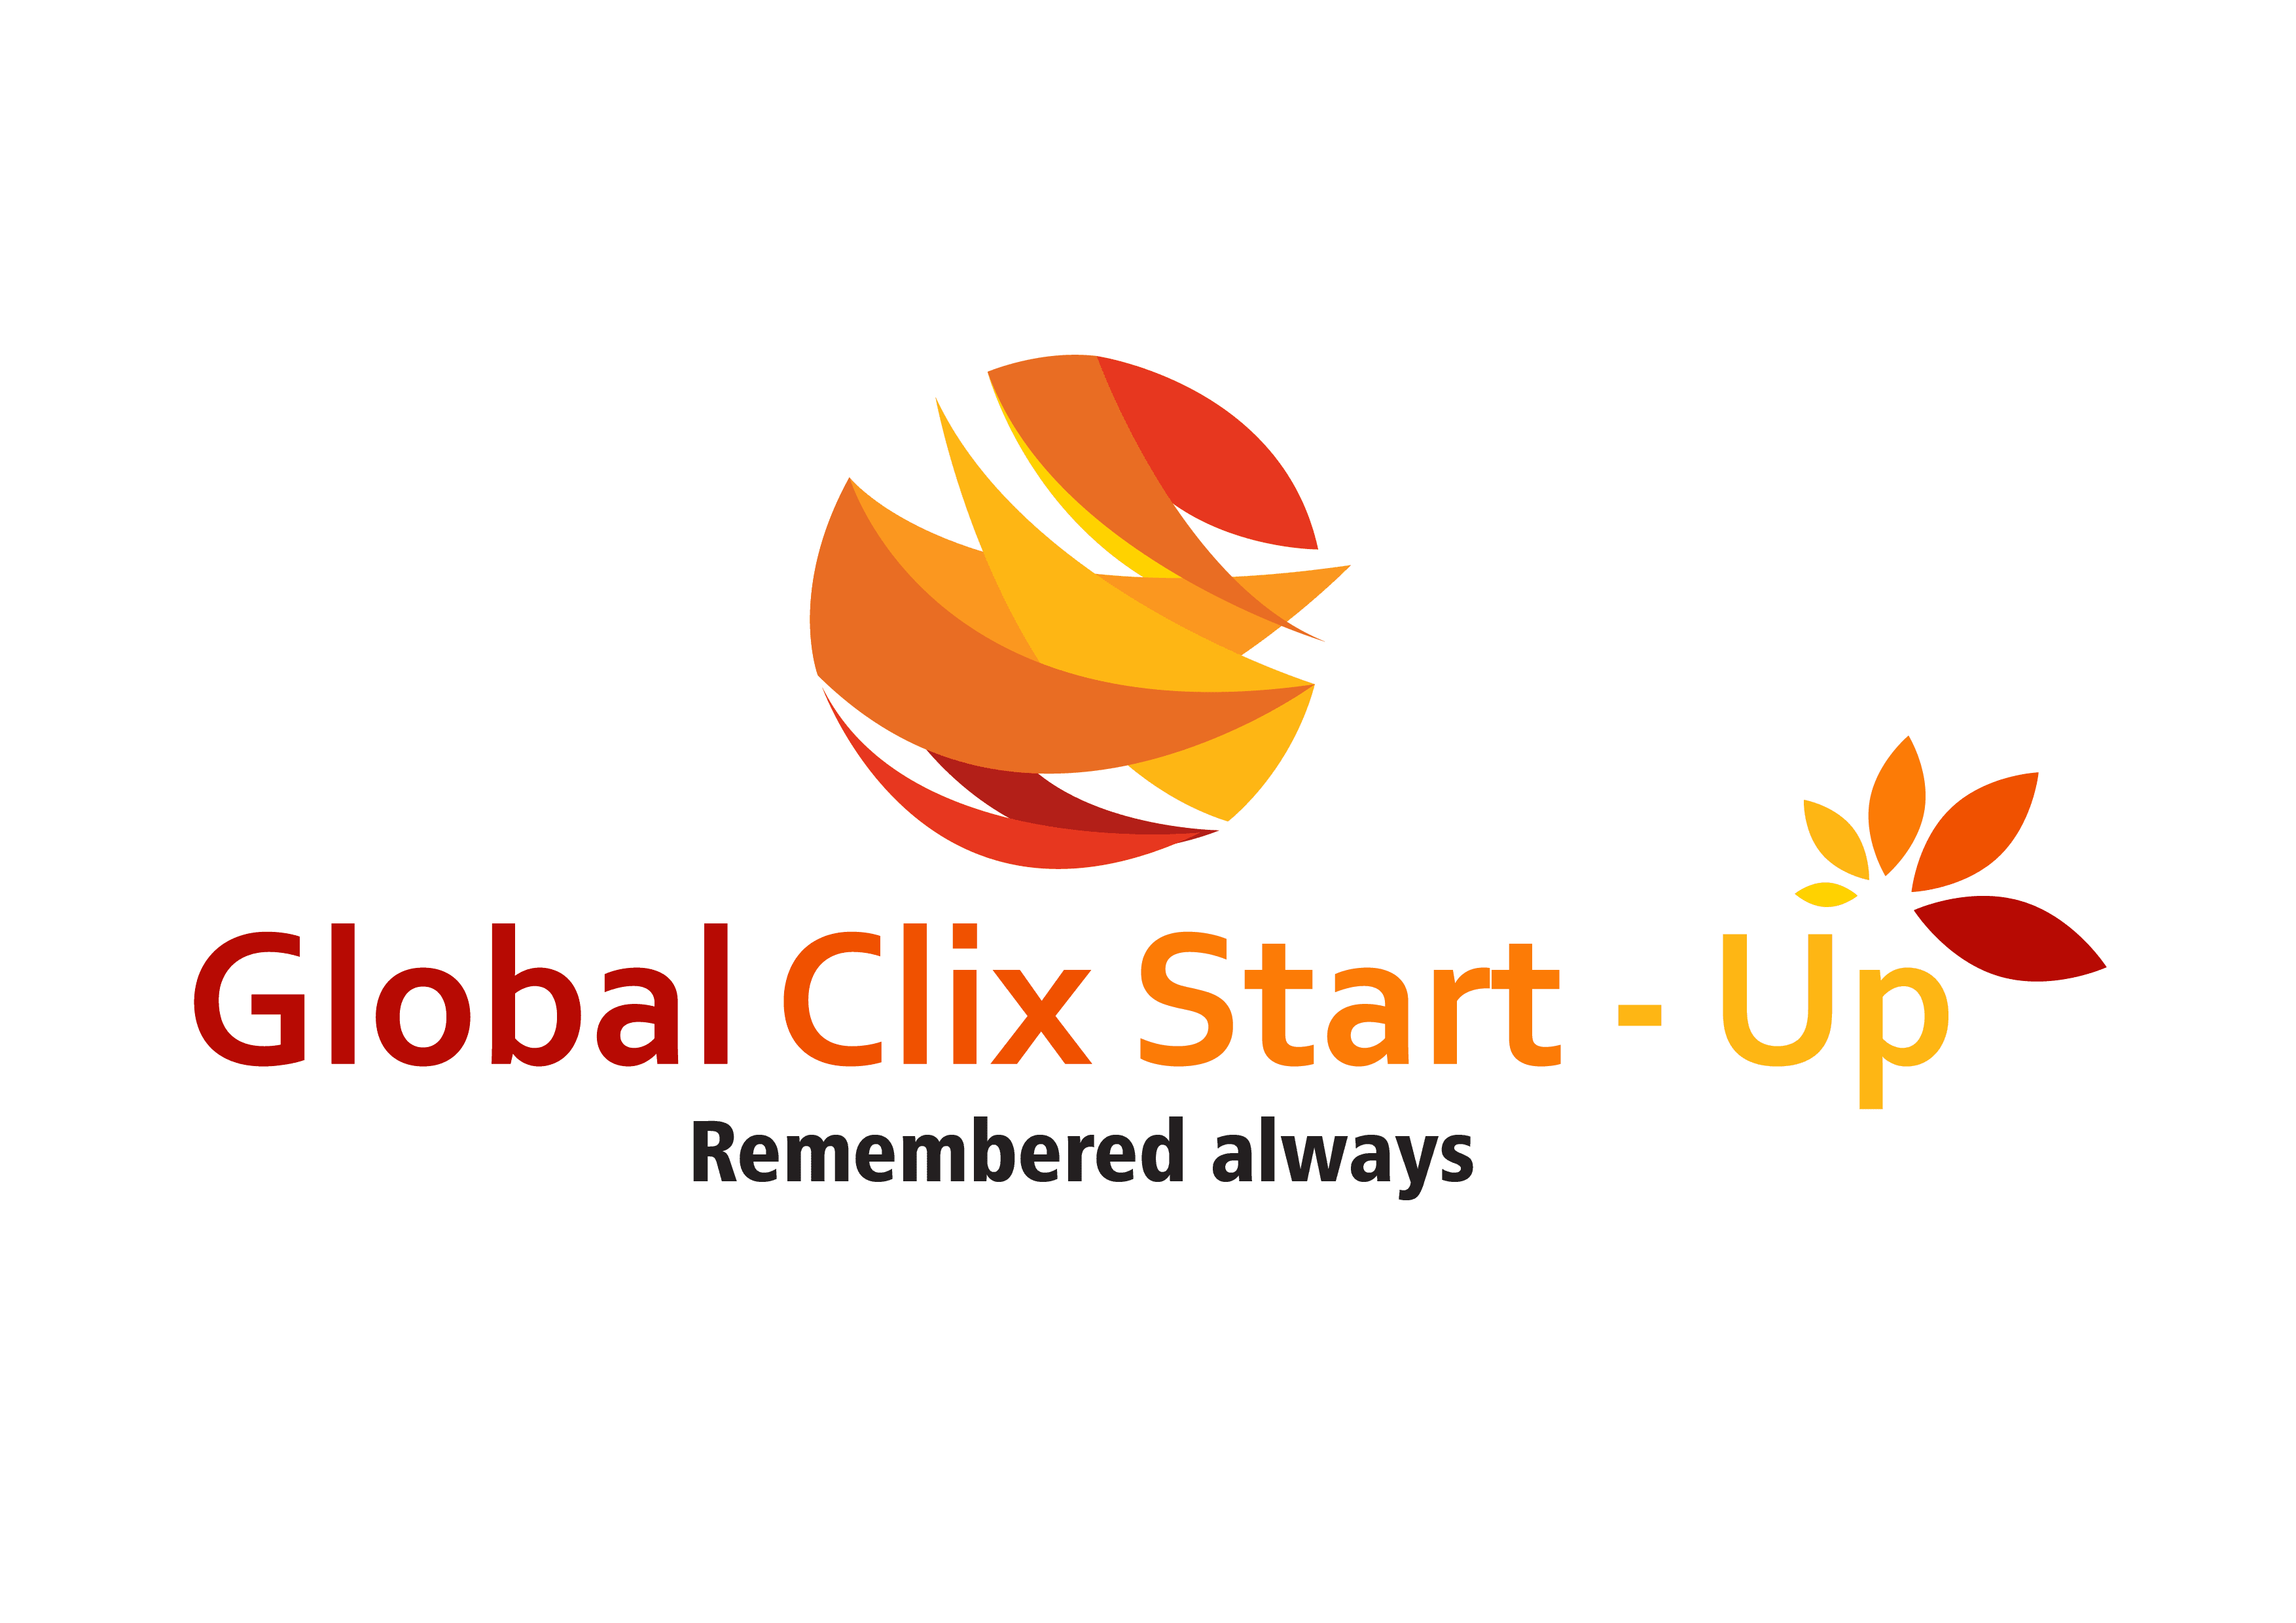 Global Clix Start Up